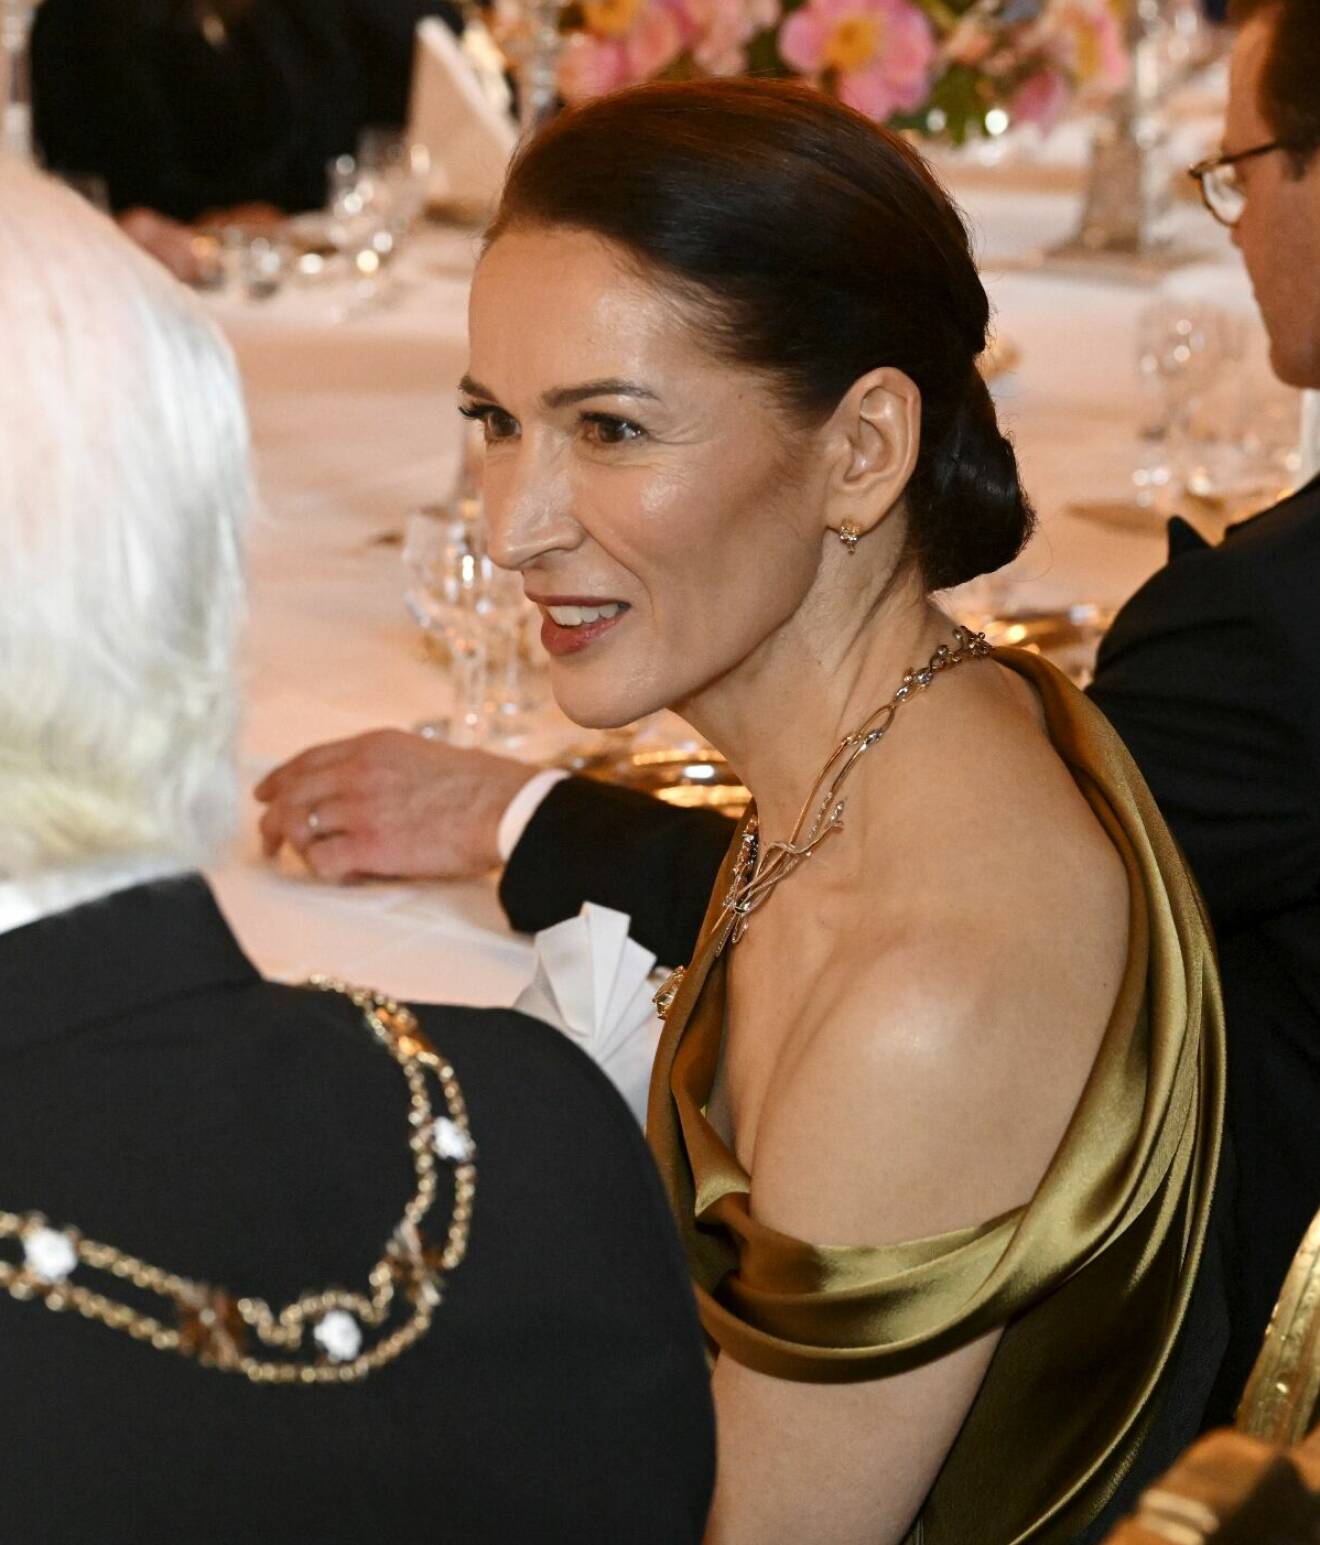 Finska presidentens fru Suzanne Innes-Stubb på middag hos kungen